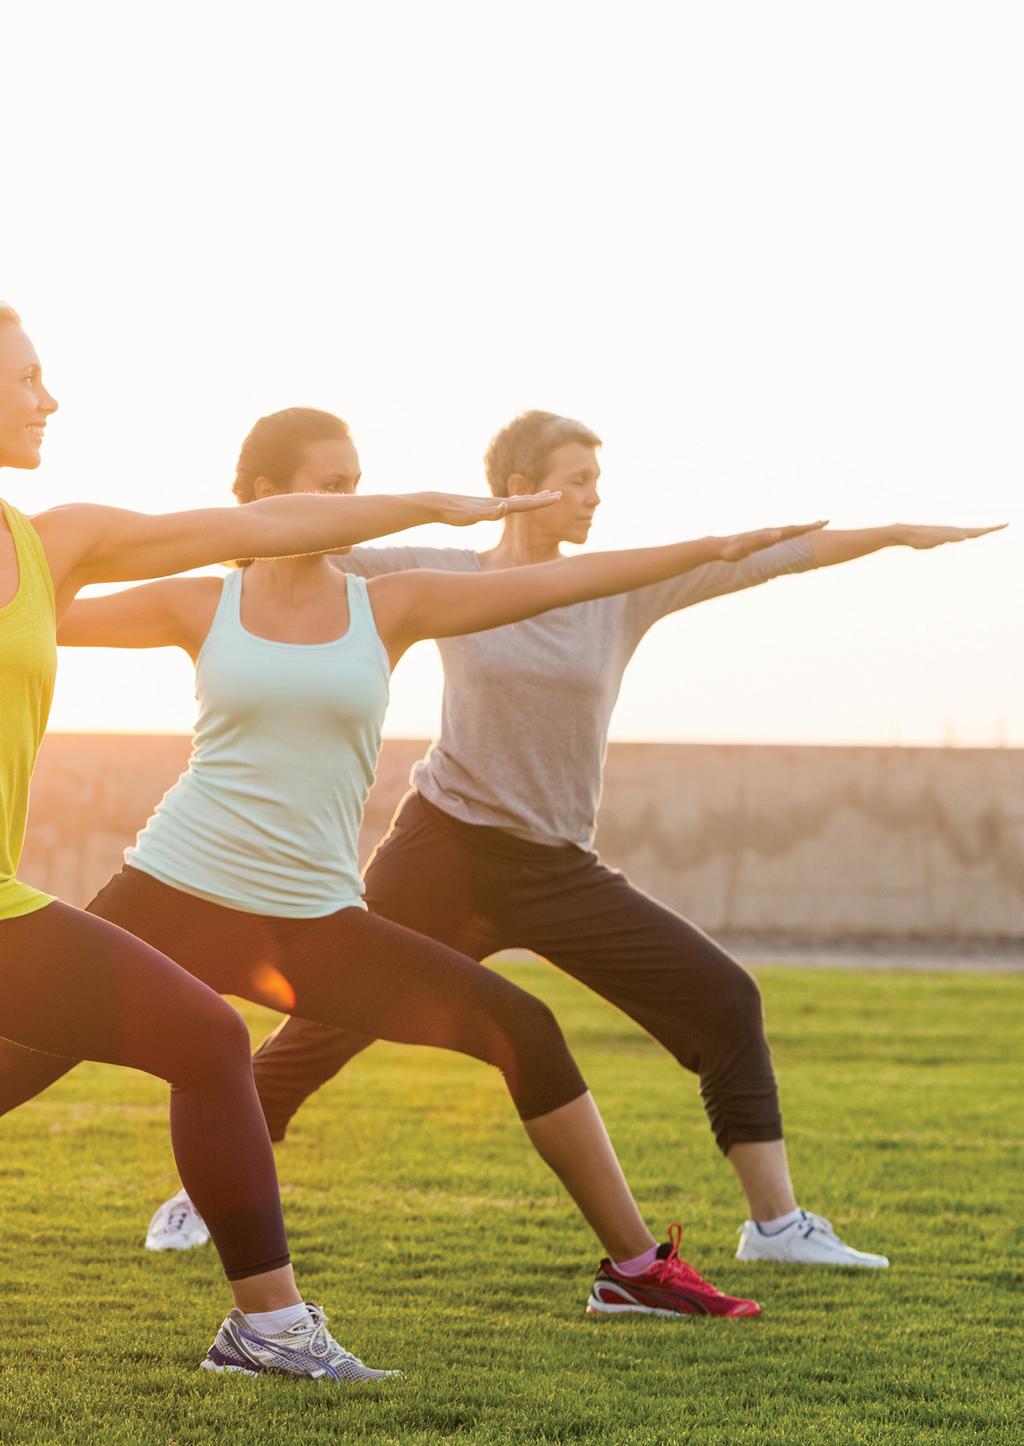 פעילות גופנית תרגול גופני מחזק את השרירים ותומך בלב, במערכת מחזור הדם ובמערכת הלימפה, בנוסף להרבה יתרונות אחרים.